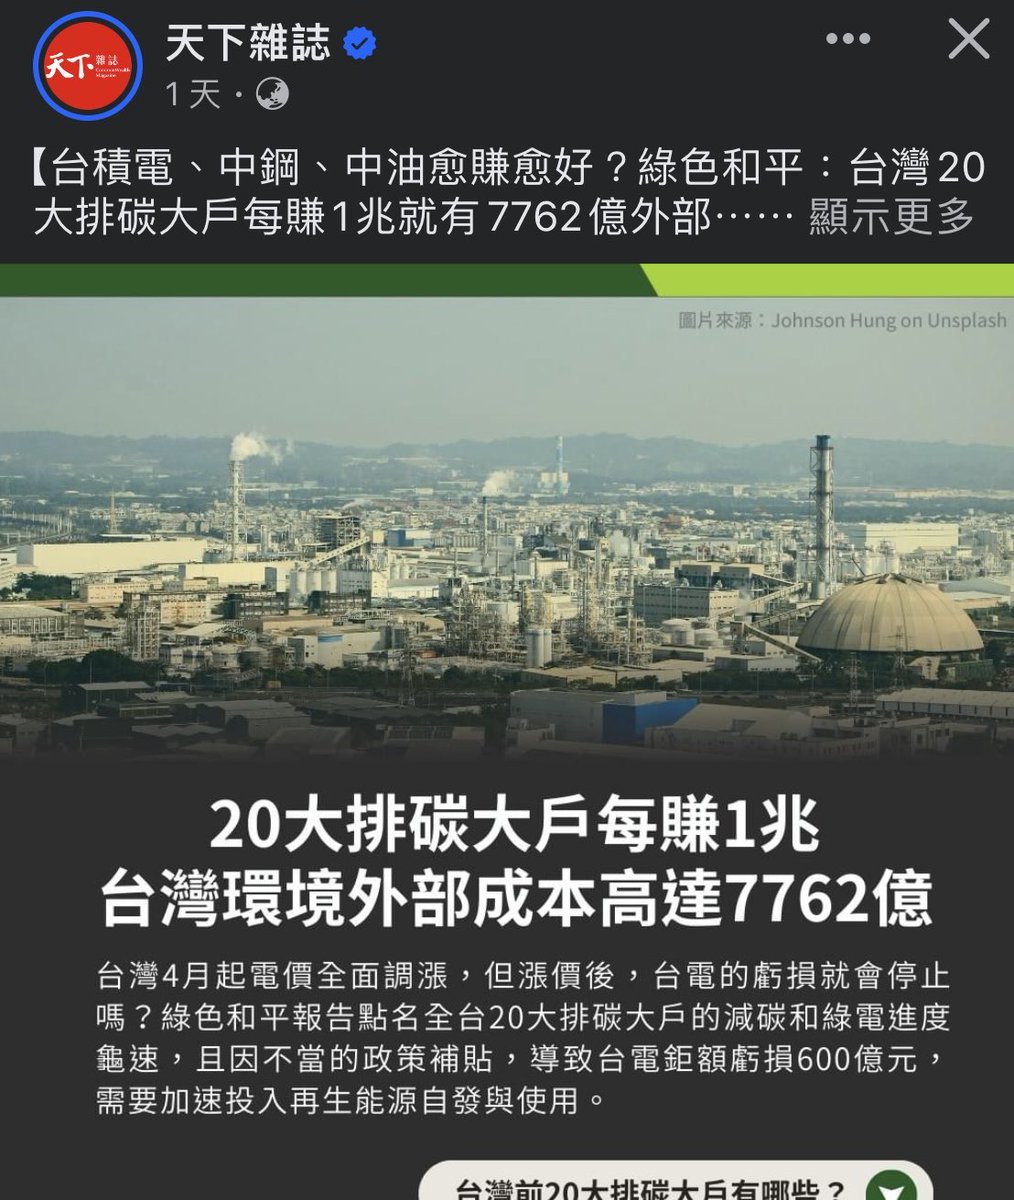 你們捐給綠色和平的錢 會被用來和有錢到流油的中國天下合作 用來替貪腐核電打廣告